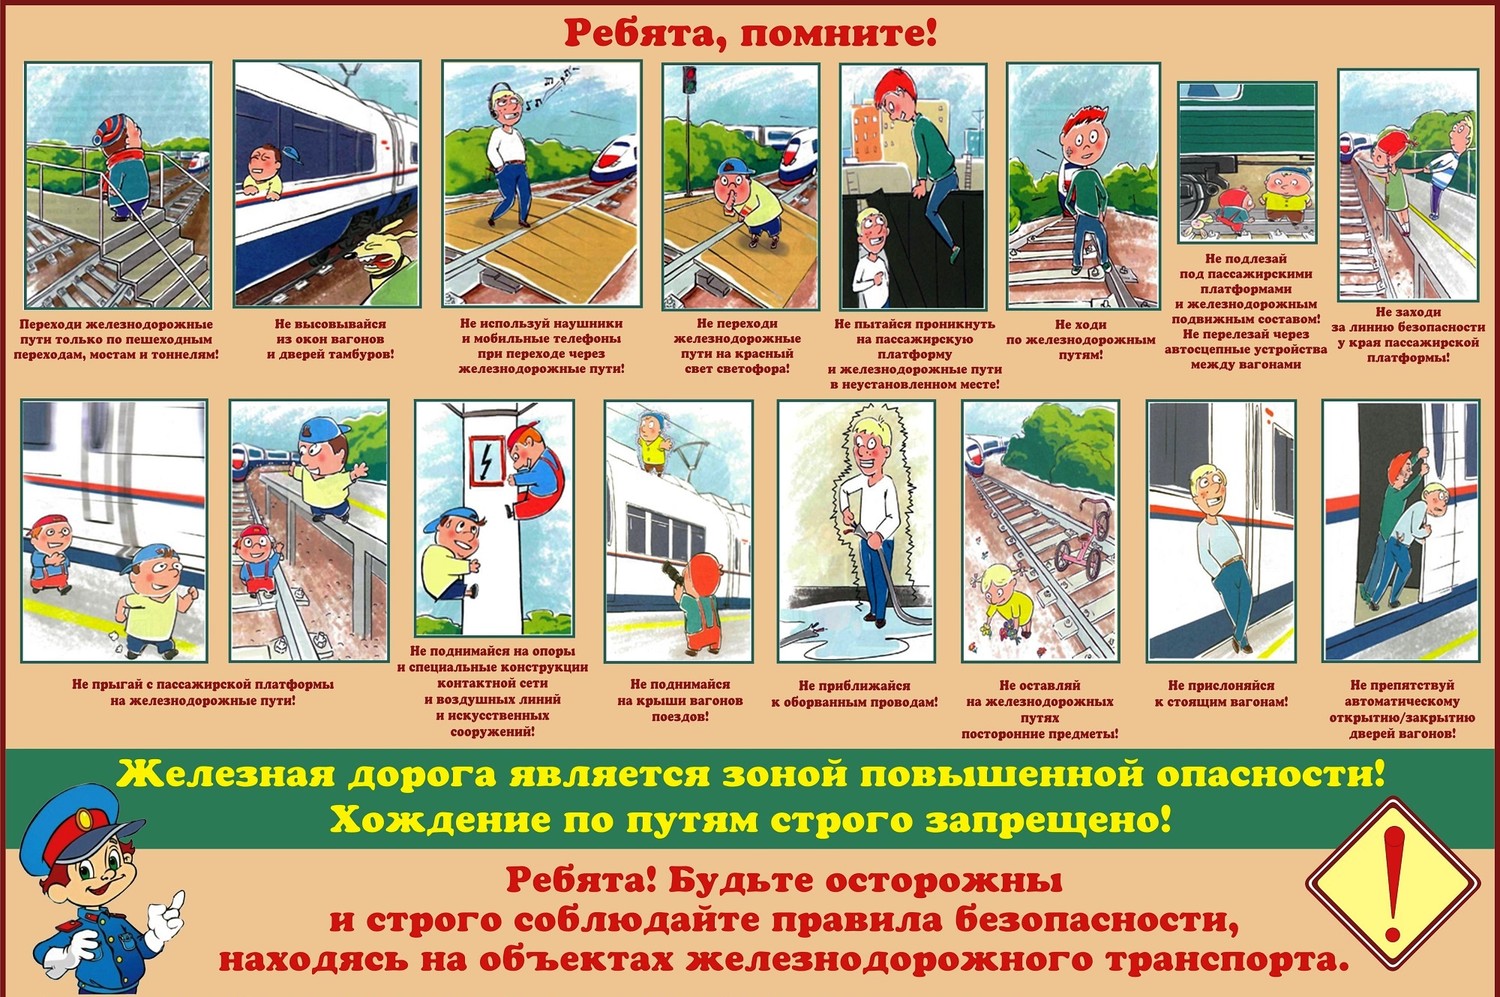 Соблюдайте меры безопасности и правила нахождения на объектах инфраструктуры железнодорожного транспорта